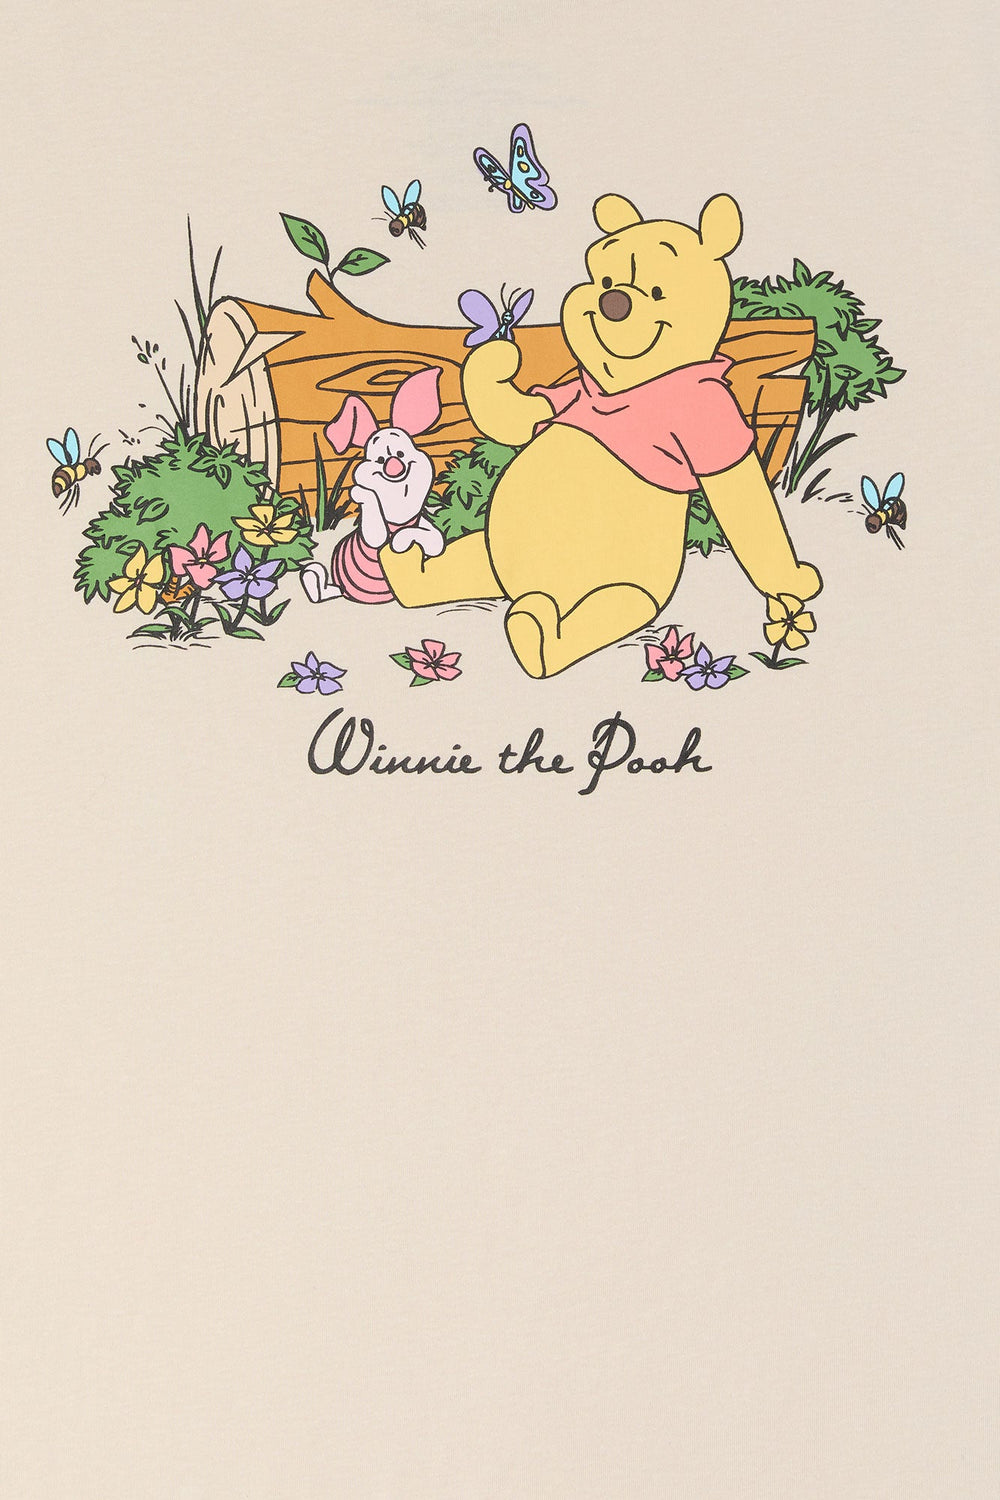 Winnie the Pooh Graphic Boyfriend T-Shirt Winnie the Pooh Graphic Boyfriend T-Shirt 1